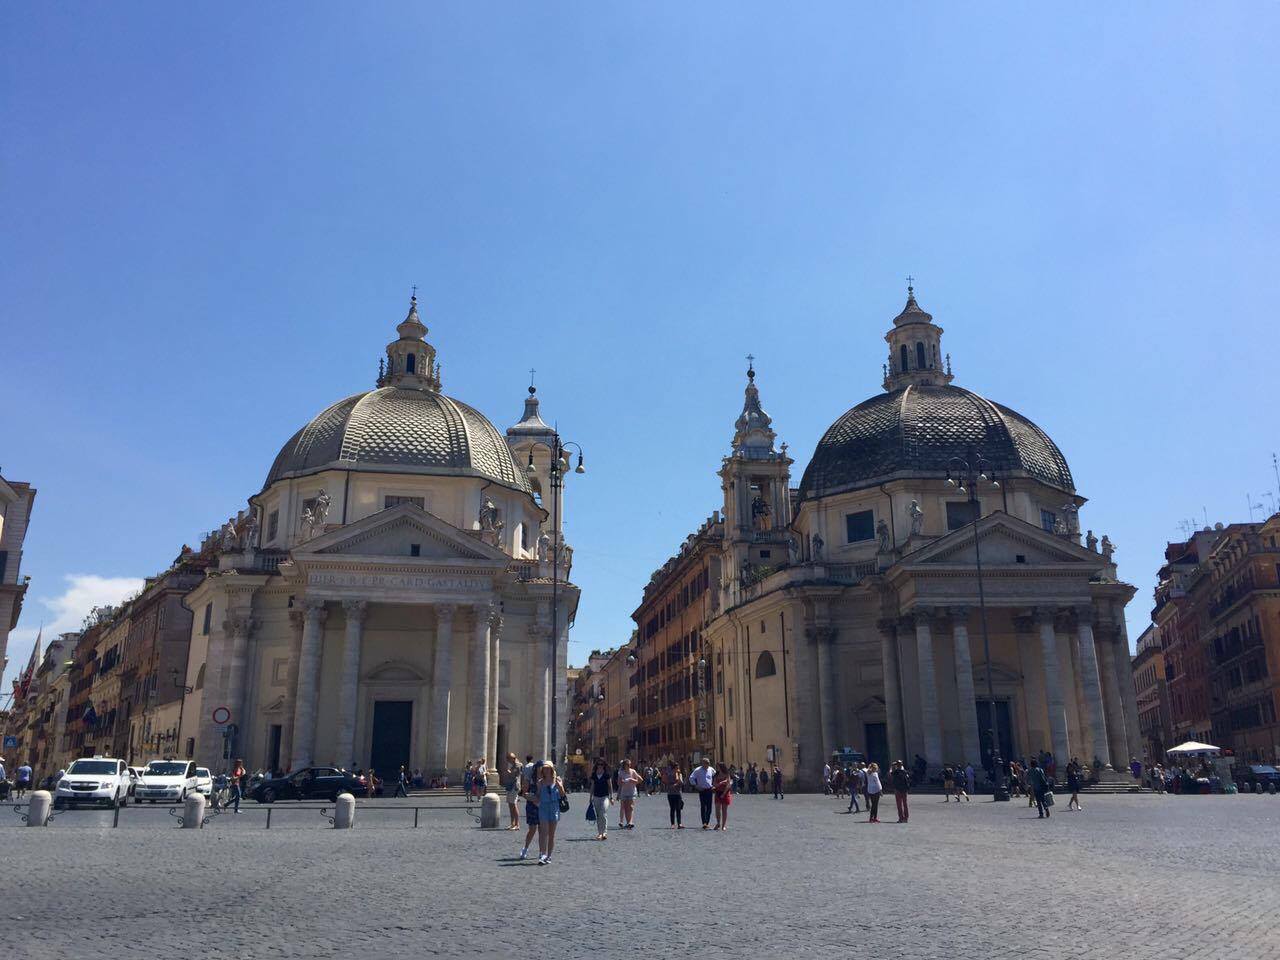 Piazza del Popolo, the two churches of Santa Maria 